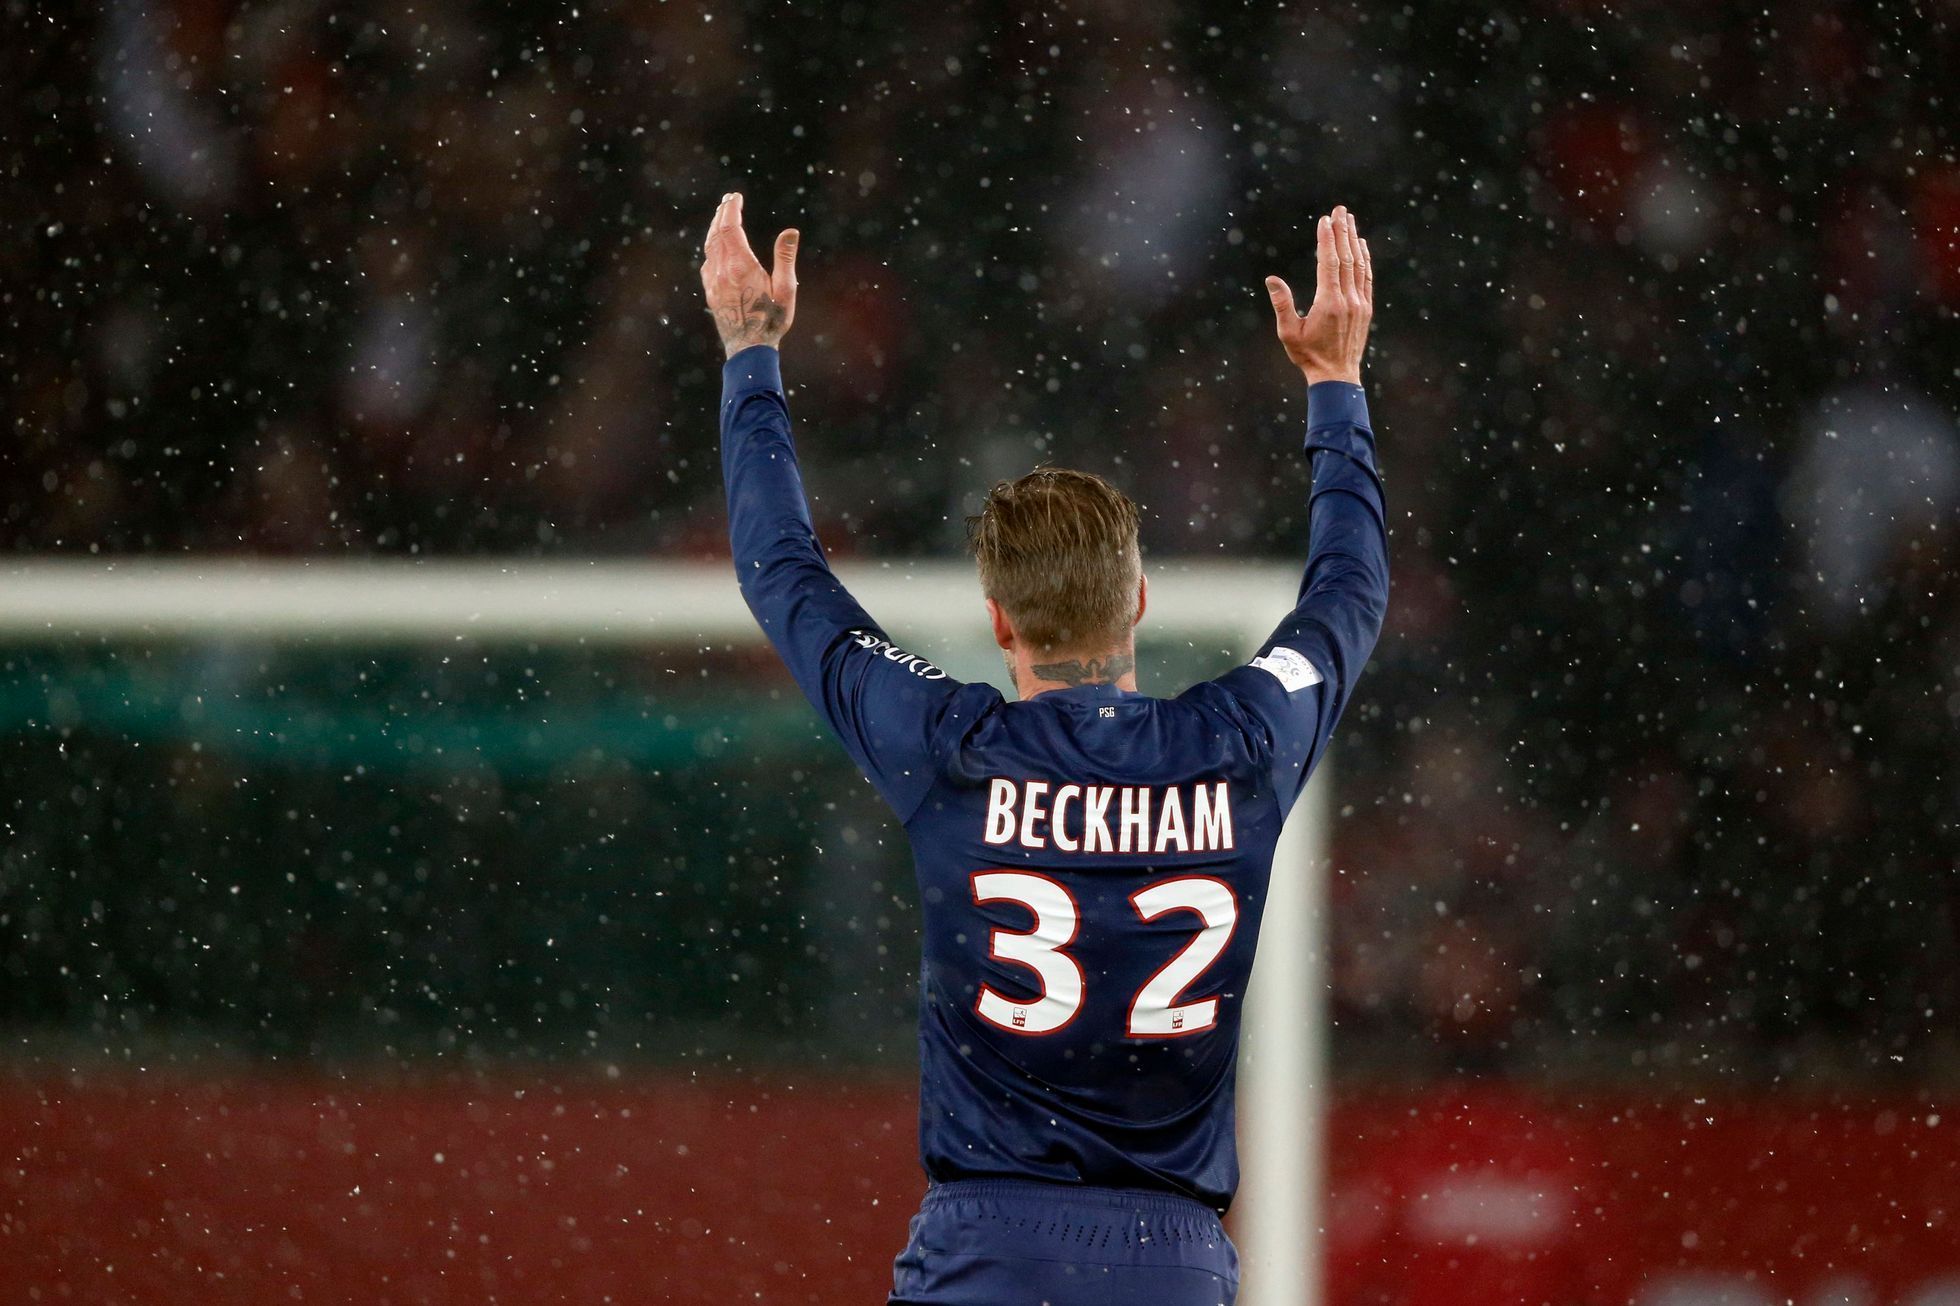 David Beckham při své premiéře za Paris St. Germain